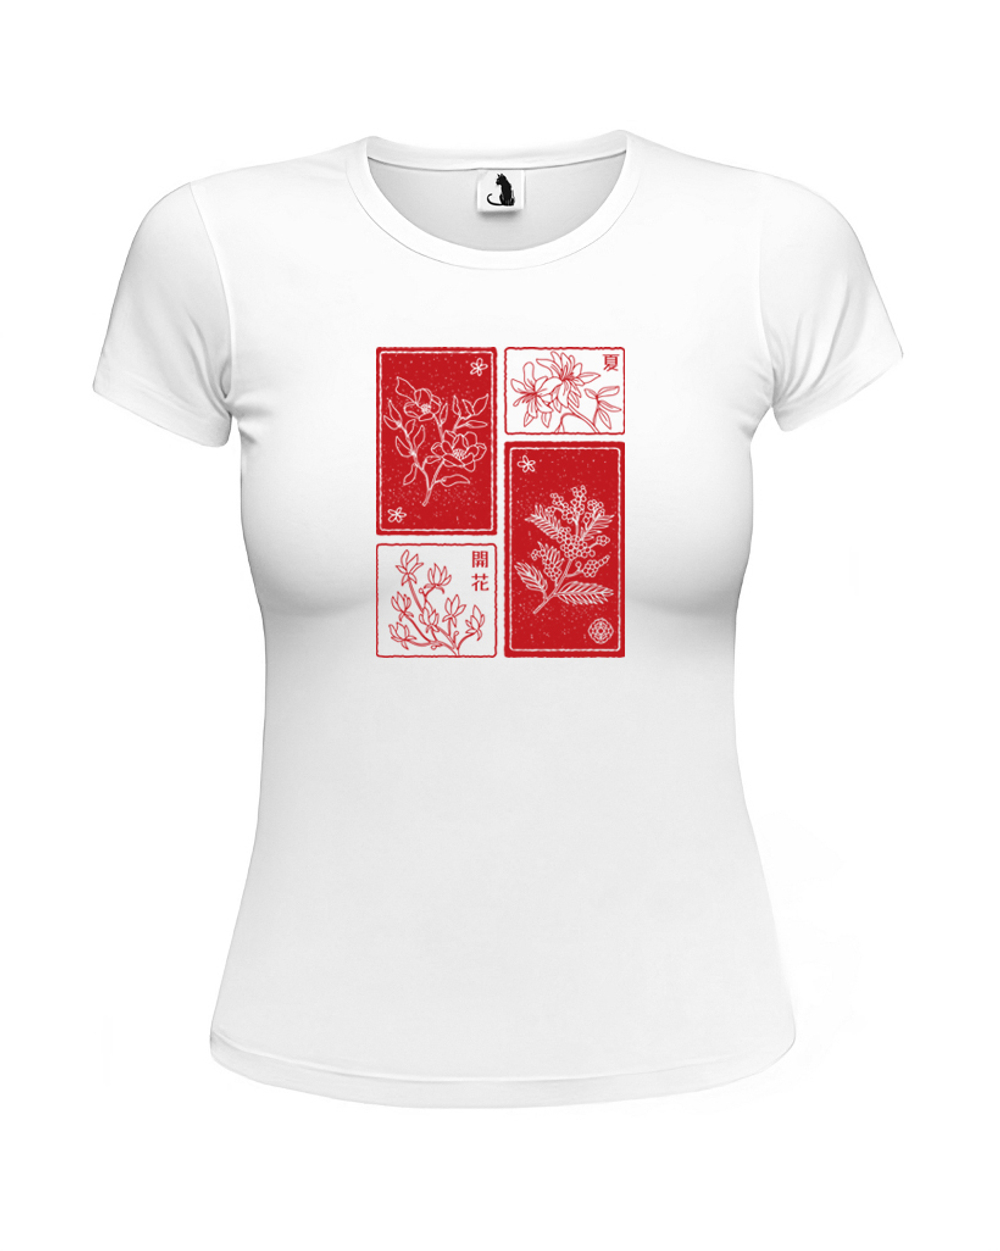 Футболка Цветы сакуры женская приталенная белая с красным рисунком